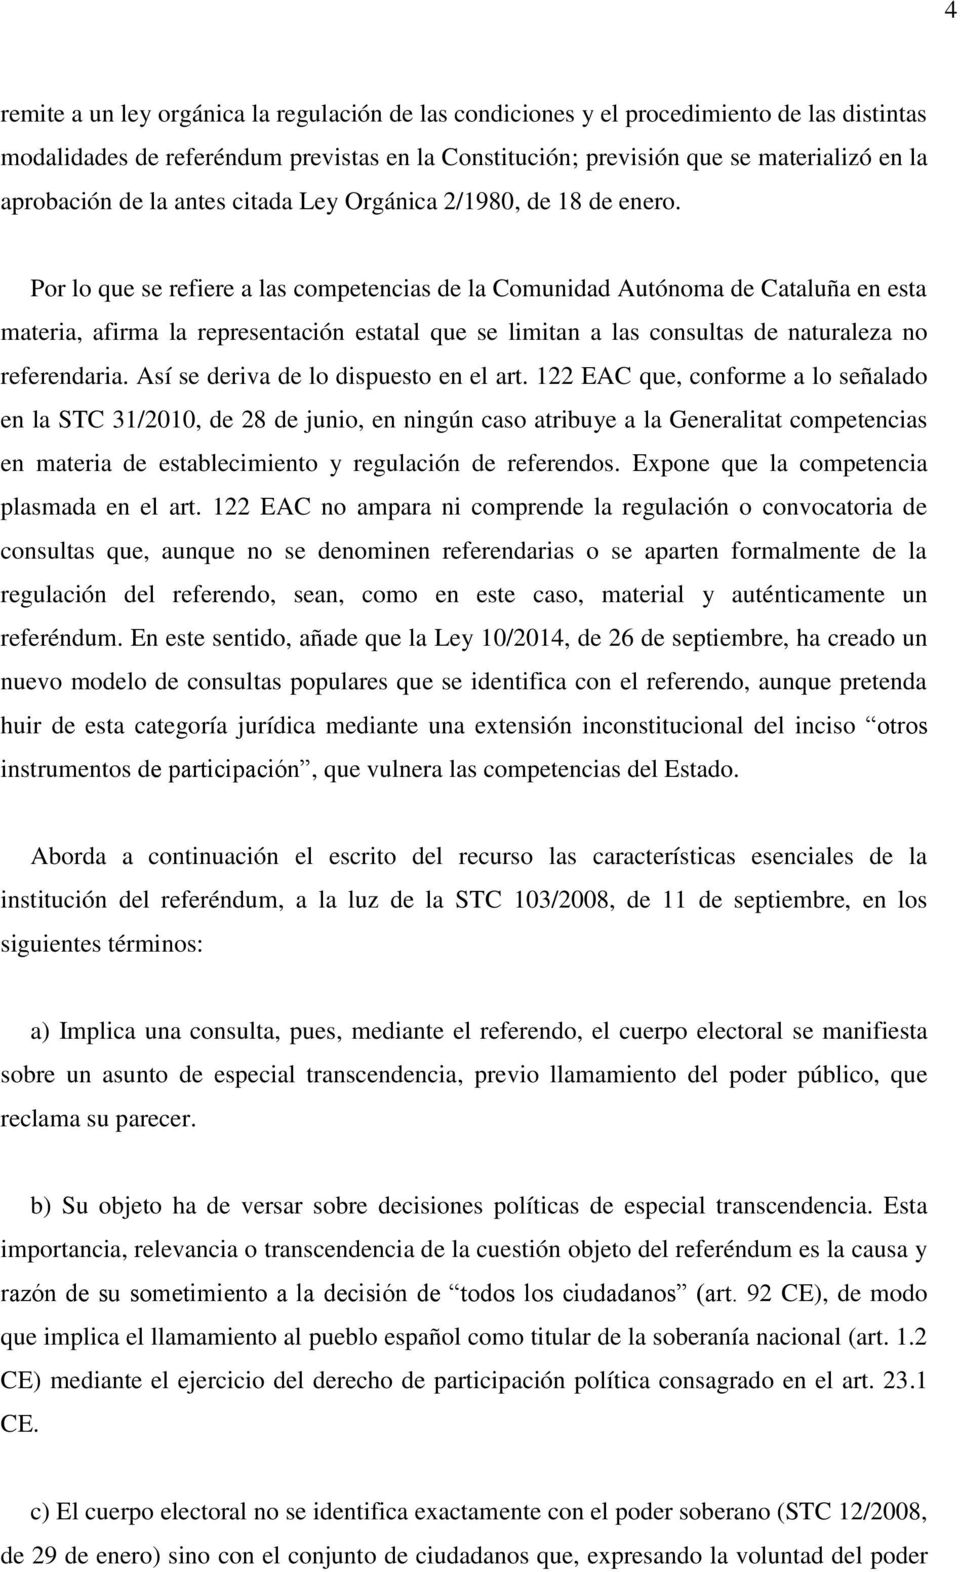 Por lo que se refiere a las competencias de la Comunidad Autónoma de Cataluña en esta materia, afirma la representación estatal que se limitan a las consultas de naturaleza no referendaria.